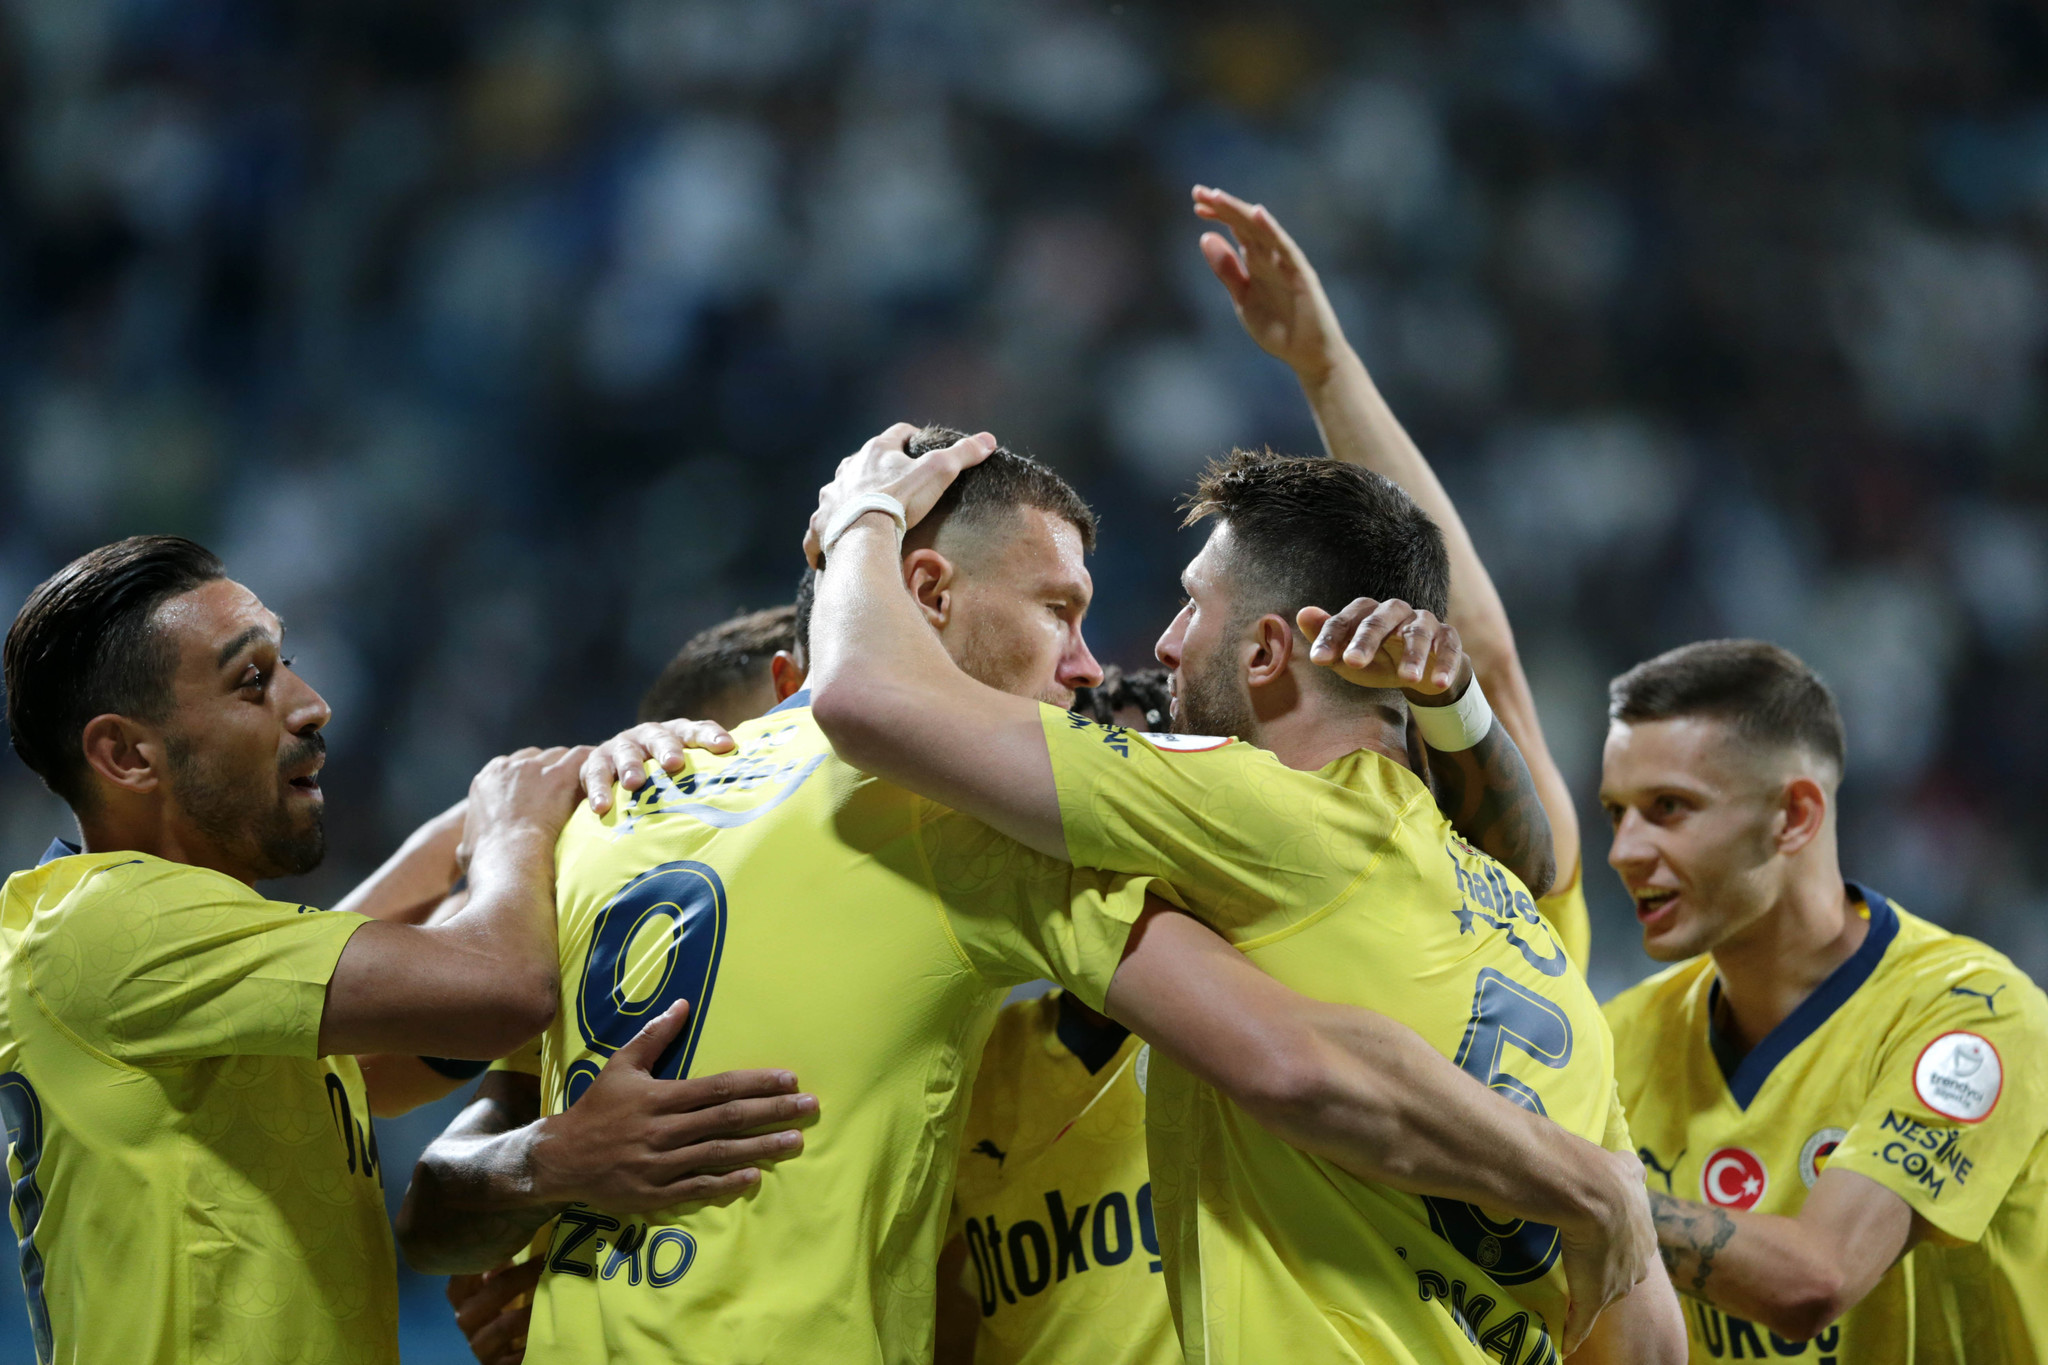 TRANSFER HABERİ: Guardiola onayı verdi! İşte Fenerbahçe’nin yeni yıldızı